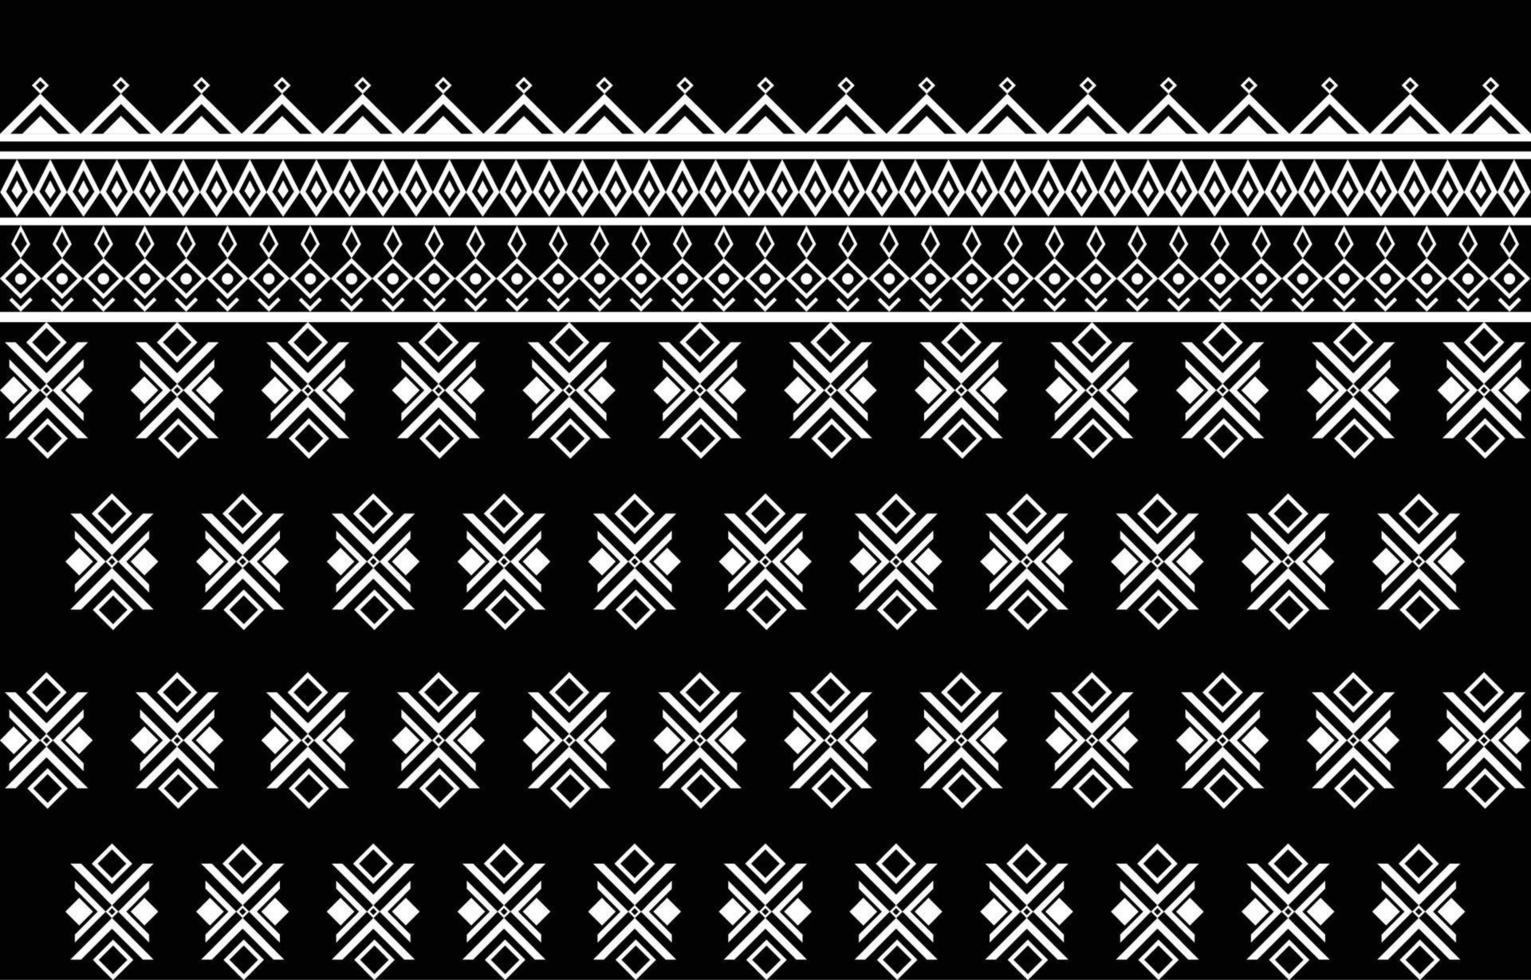 amerikanisches stoffmusterdesign. Verwenden Sie Geometrie, um ein Stoffmuster zu erstellen. Design für Textilindustrie, Hintergrund, Teppich, Tapeten, Kleidung, Batik und ethnische Stoffe. vektor